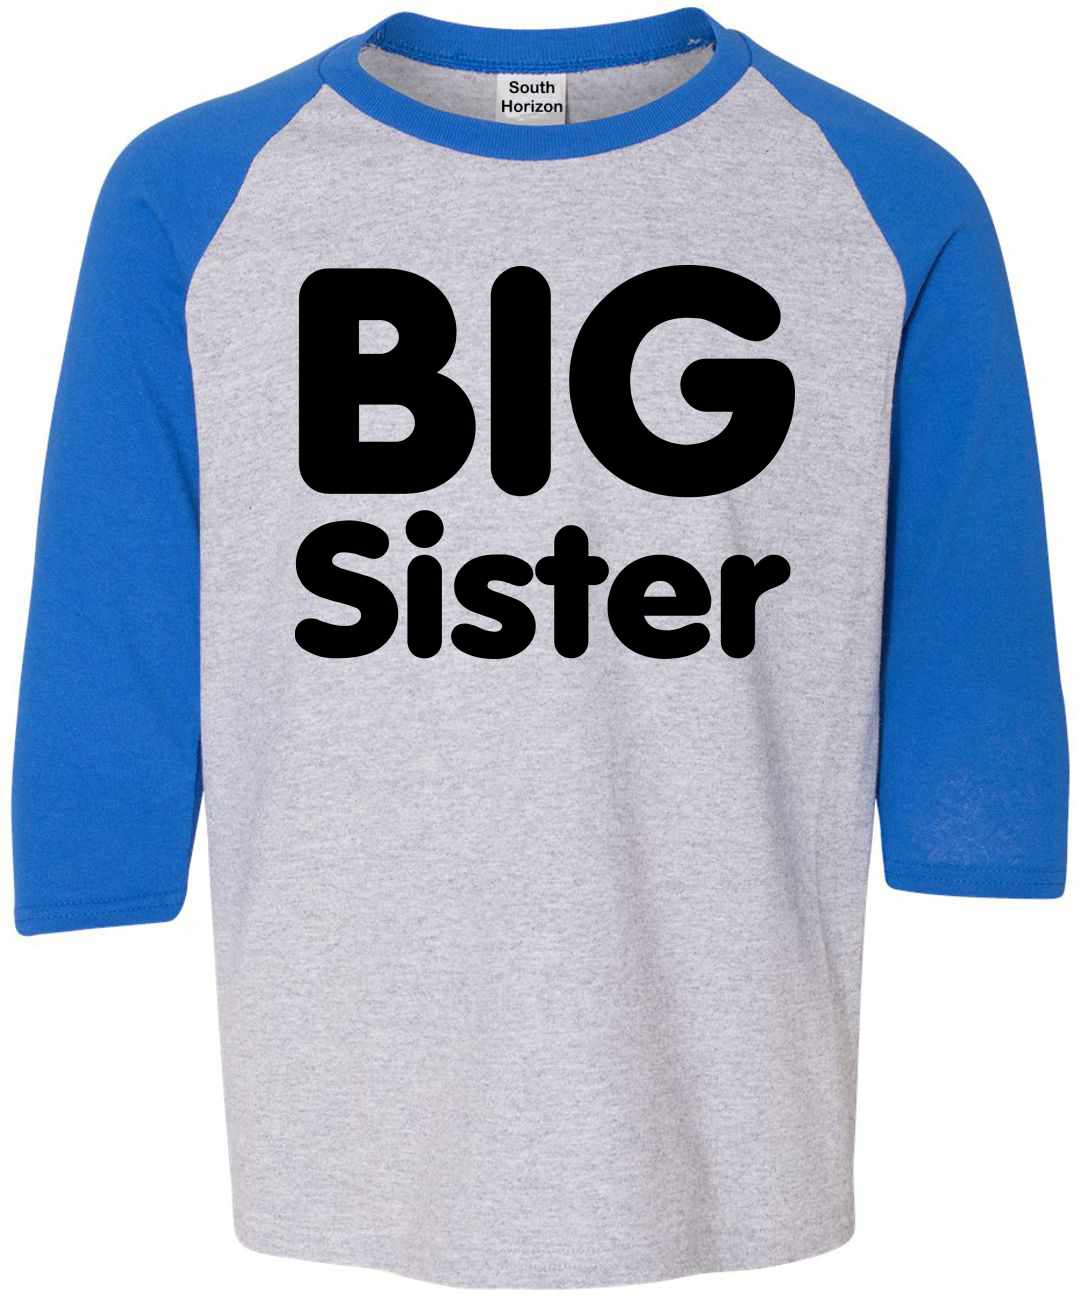 BIG SISTER on Youth Baseball Shirt (#853-212)